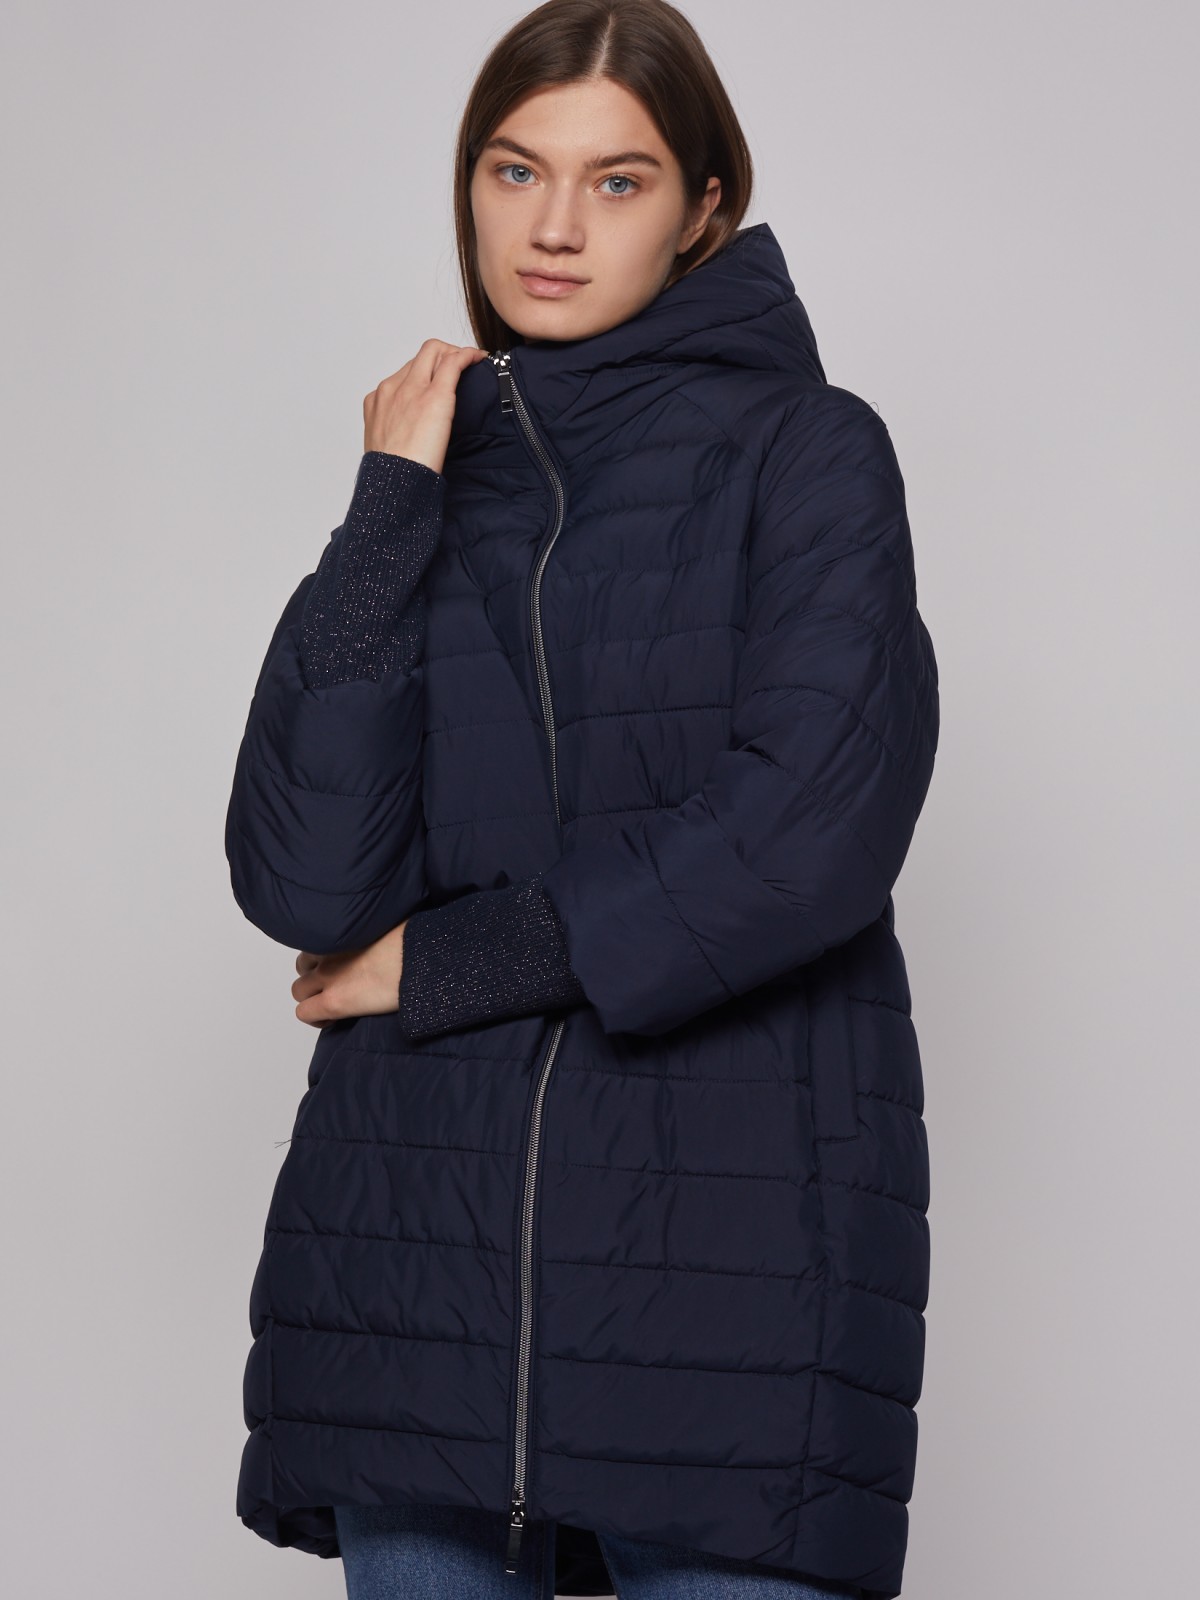 Утеплённое пальто объёмного силуэта zolla 022335202084, цвет синий, размер S - фото 3